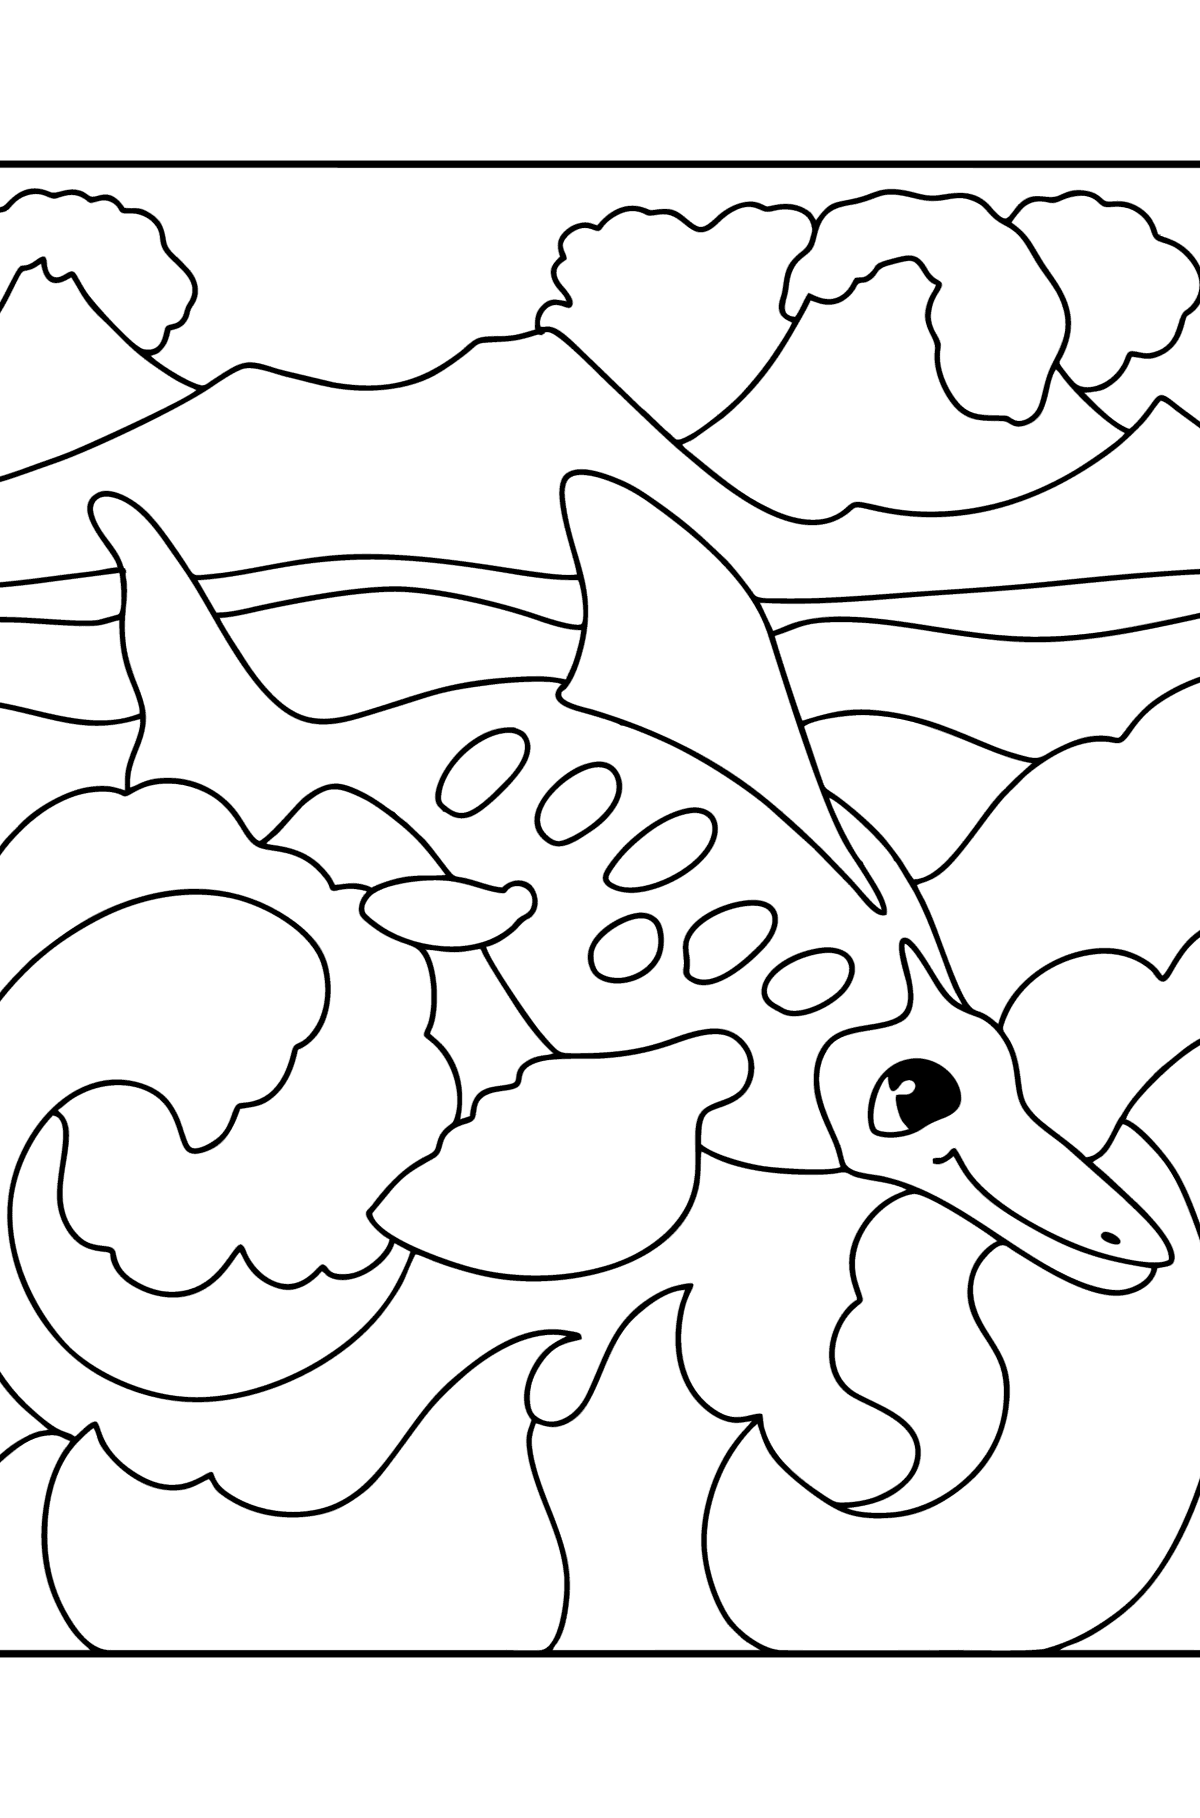 Tegning til fargelegging ikthyosaurus - Tegninger til fargelegging for barn